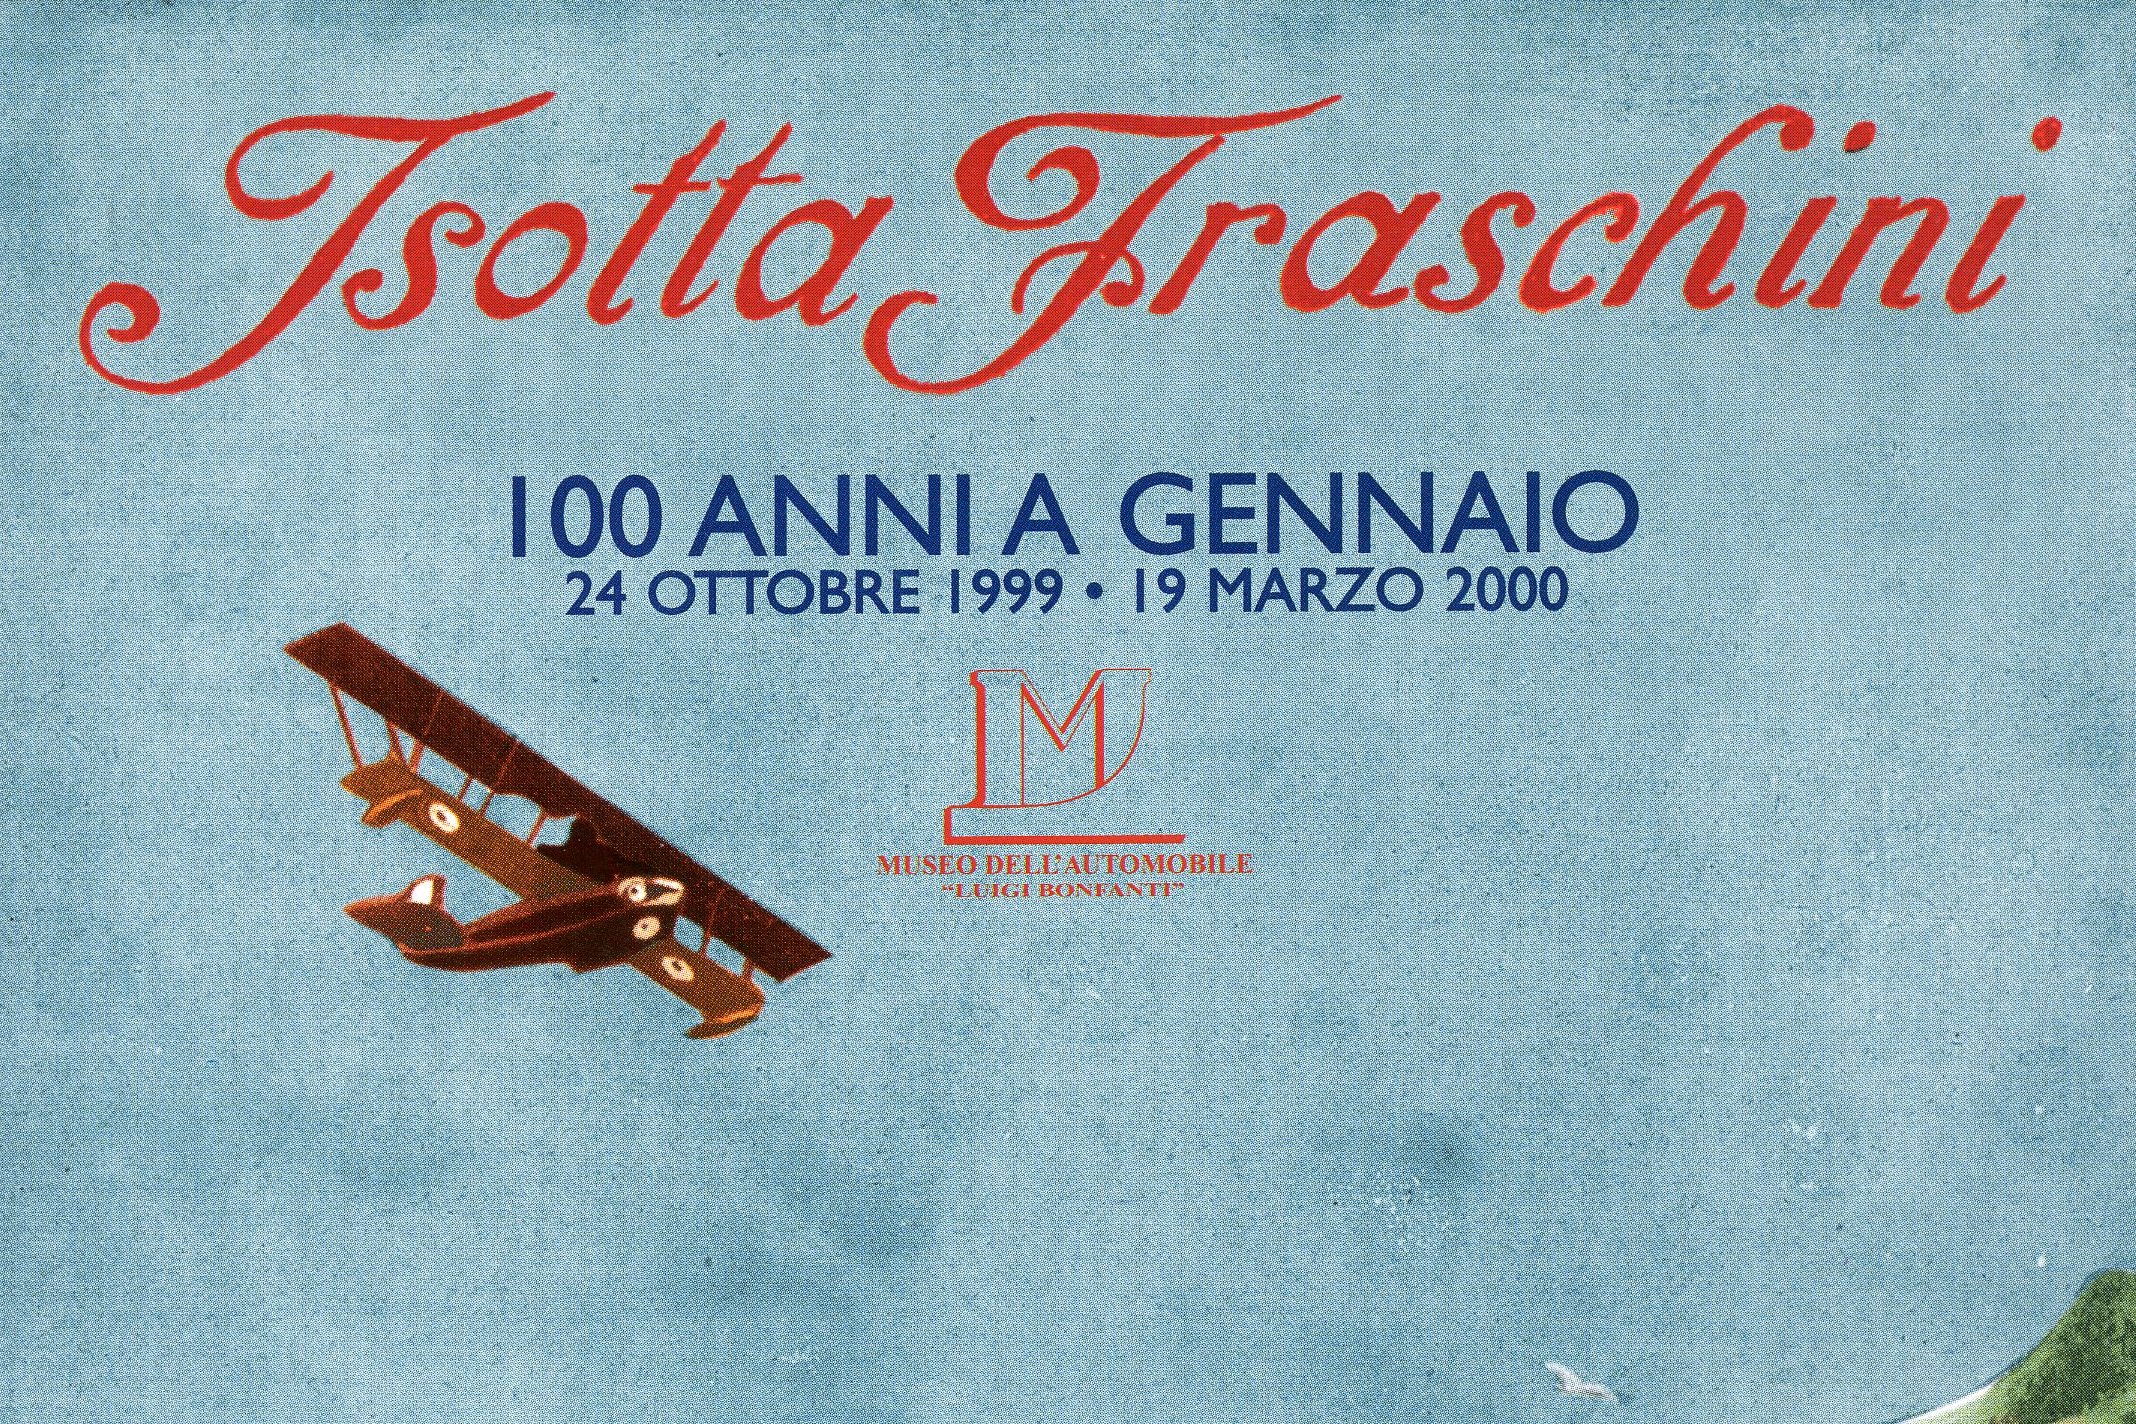 MOSTRA, Isotta Fraschini, 100 anni, Bassano del Grappa